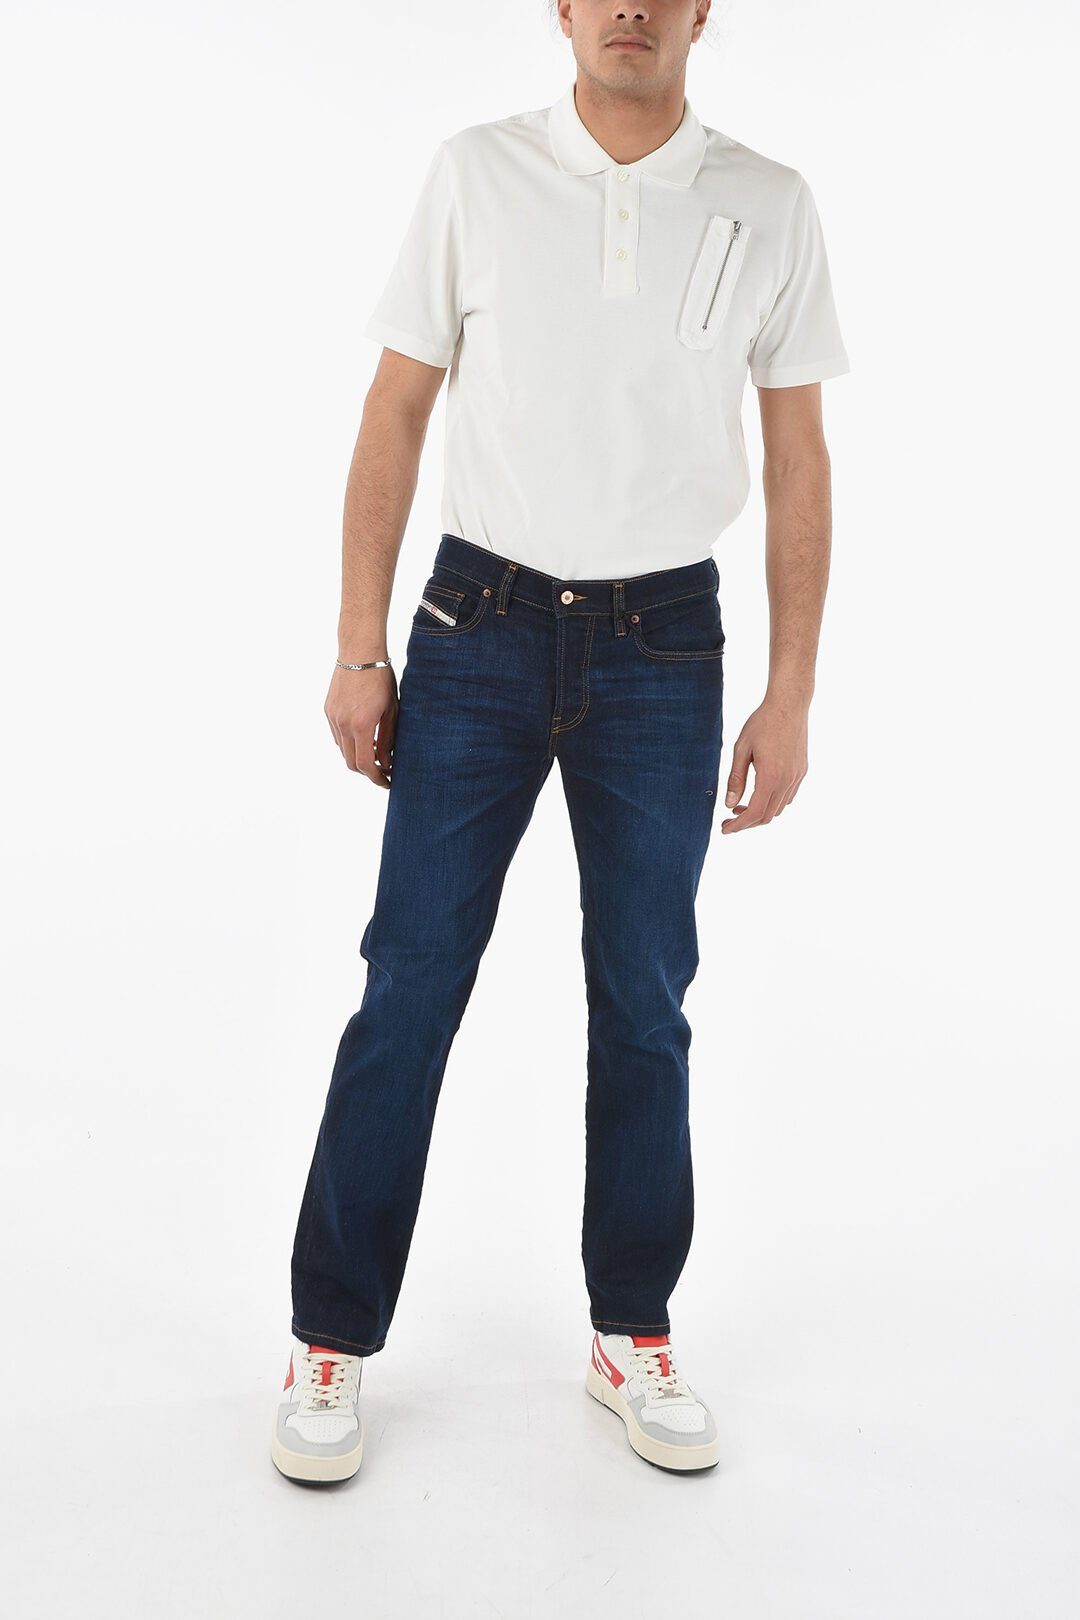 0GDAO mit Stretch-Anteil Diesel Style, Straight-Jeans D-MIHTRY Herren Jeans 5-Pocket Diesel